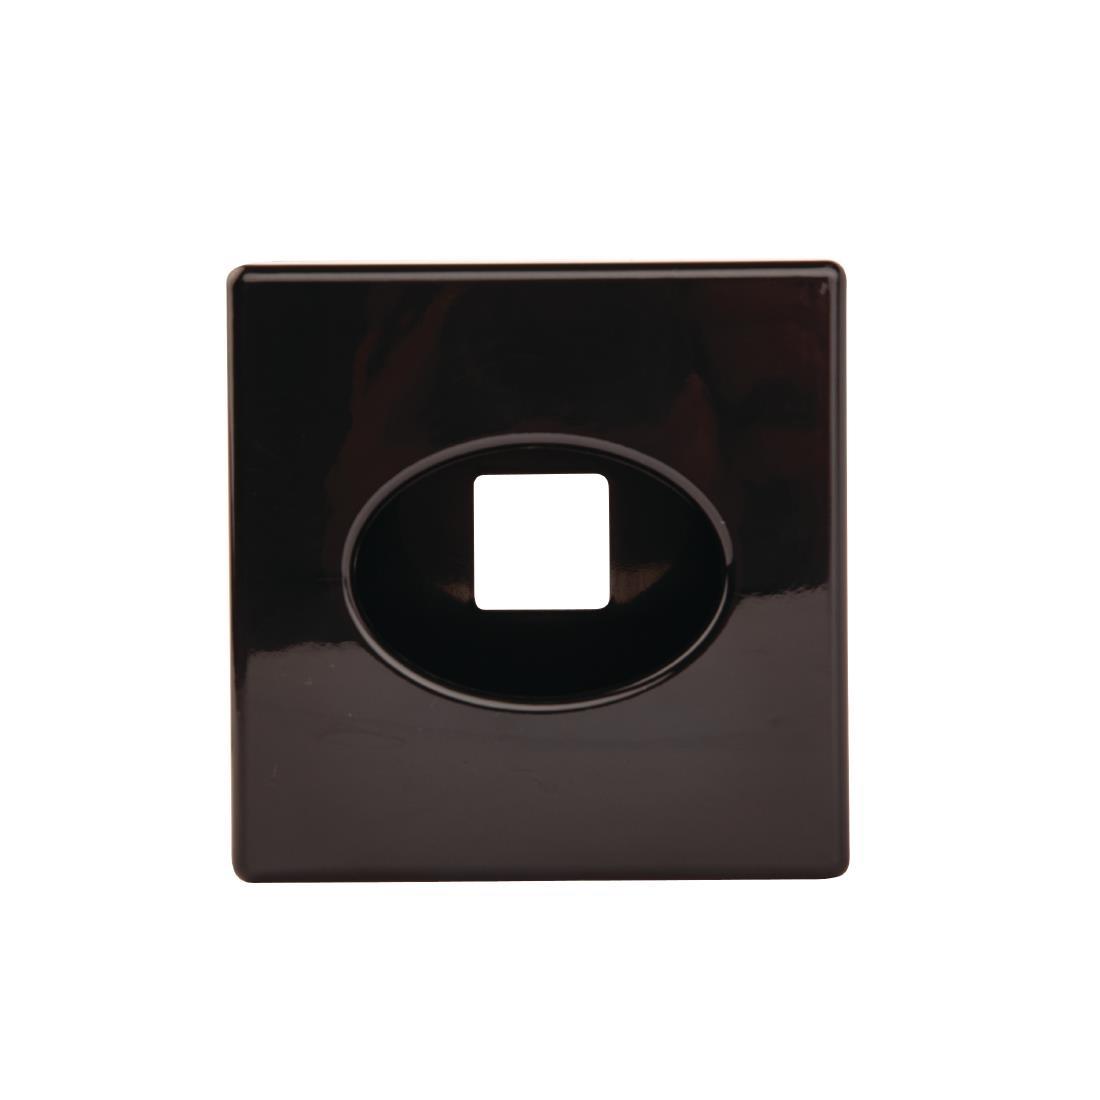 Black Cube Tissue Holder - DA603  - 4